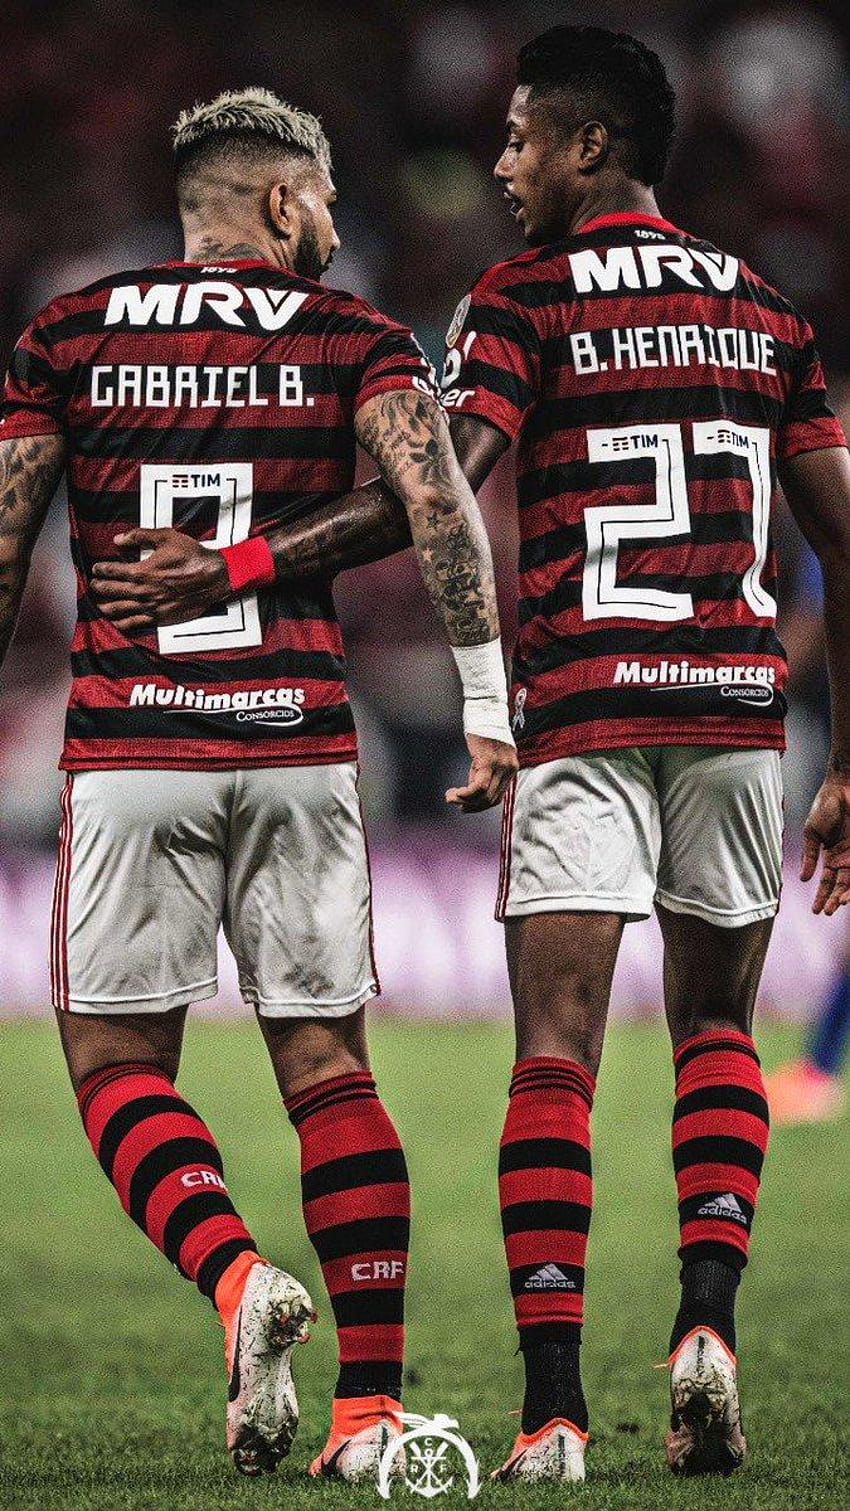 Fla ar Twitter: “Eles chegaram aqui no Flamengo, gabigol flamengo HD phone wallpaper